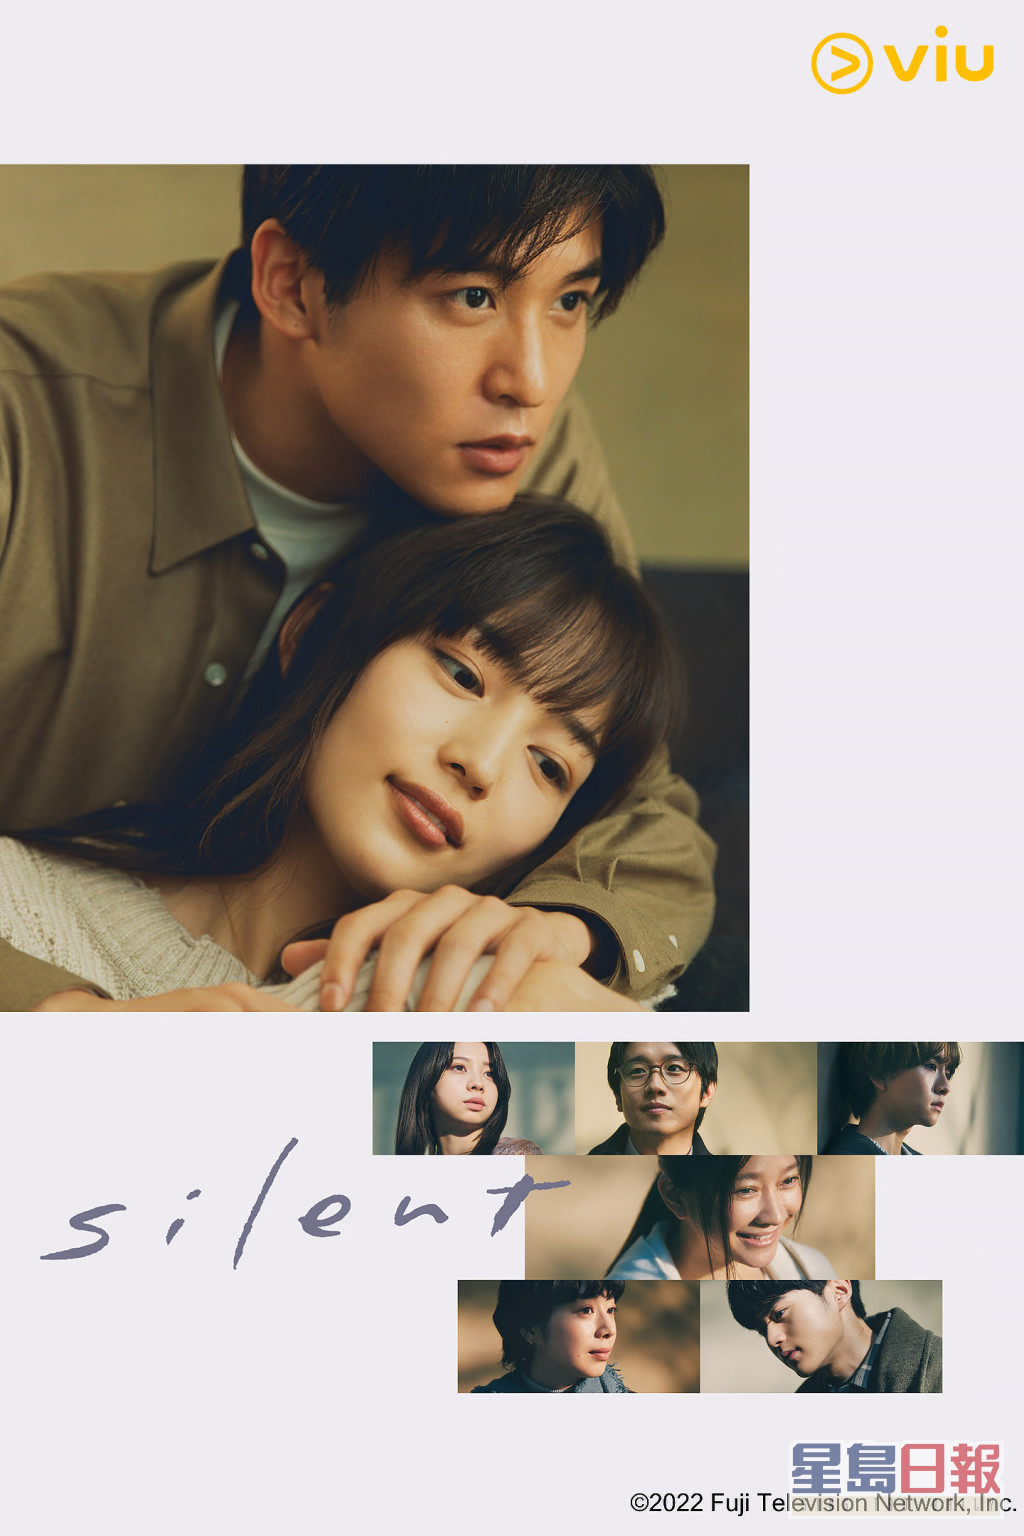 秋季催泪神剧《silent》逢星期五在「黄Viu煲剧平台」上架，香港观众可以免费紧贴最新进度。